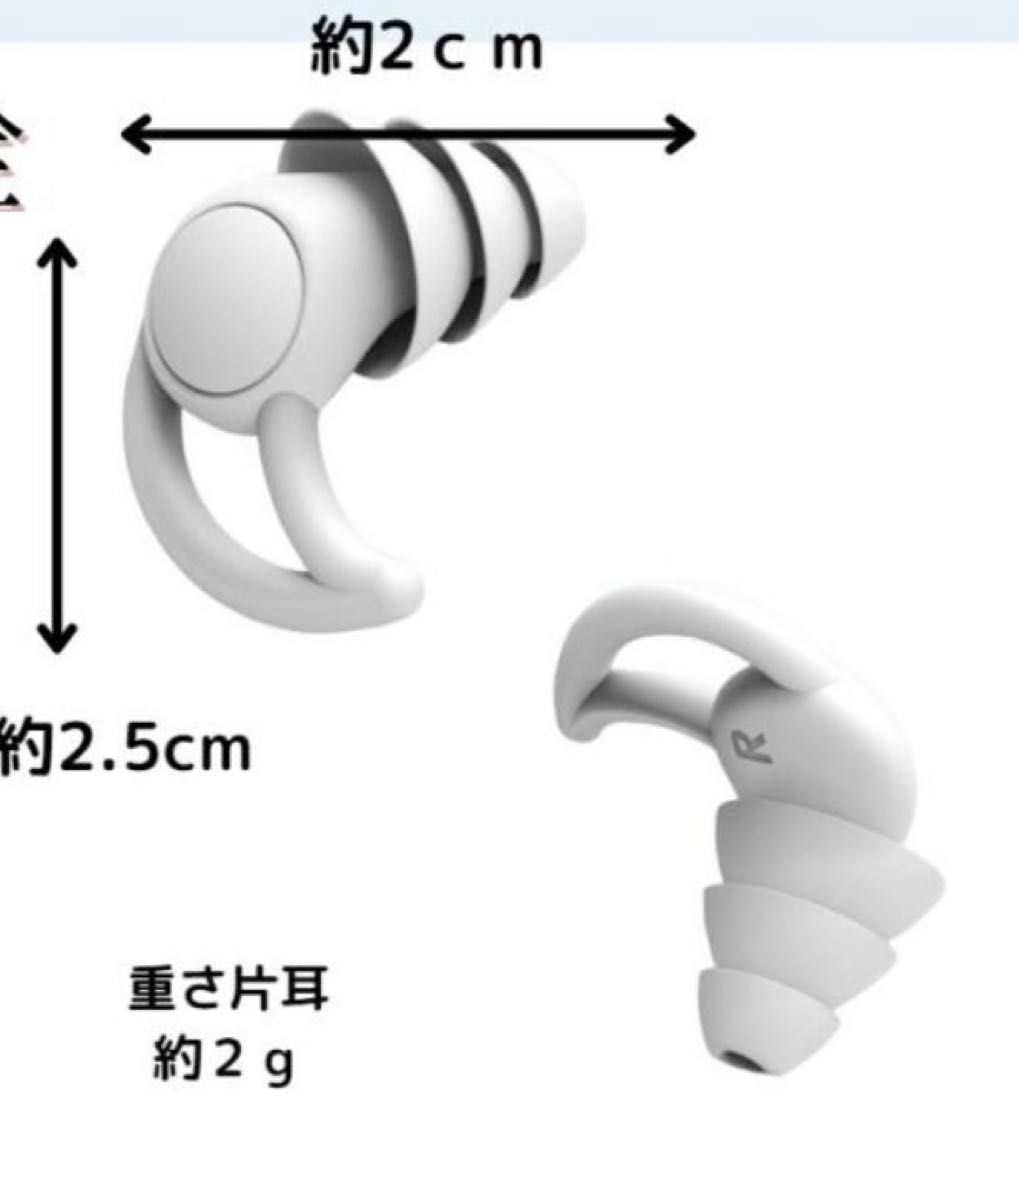 白ケース付耳栓 シリコンフィット 水洗い可能  清潔 快眠睡眠安眠 遮音防音 3層構造 水泳 ライブフェス聴覚保護の画像4